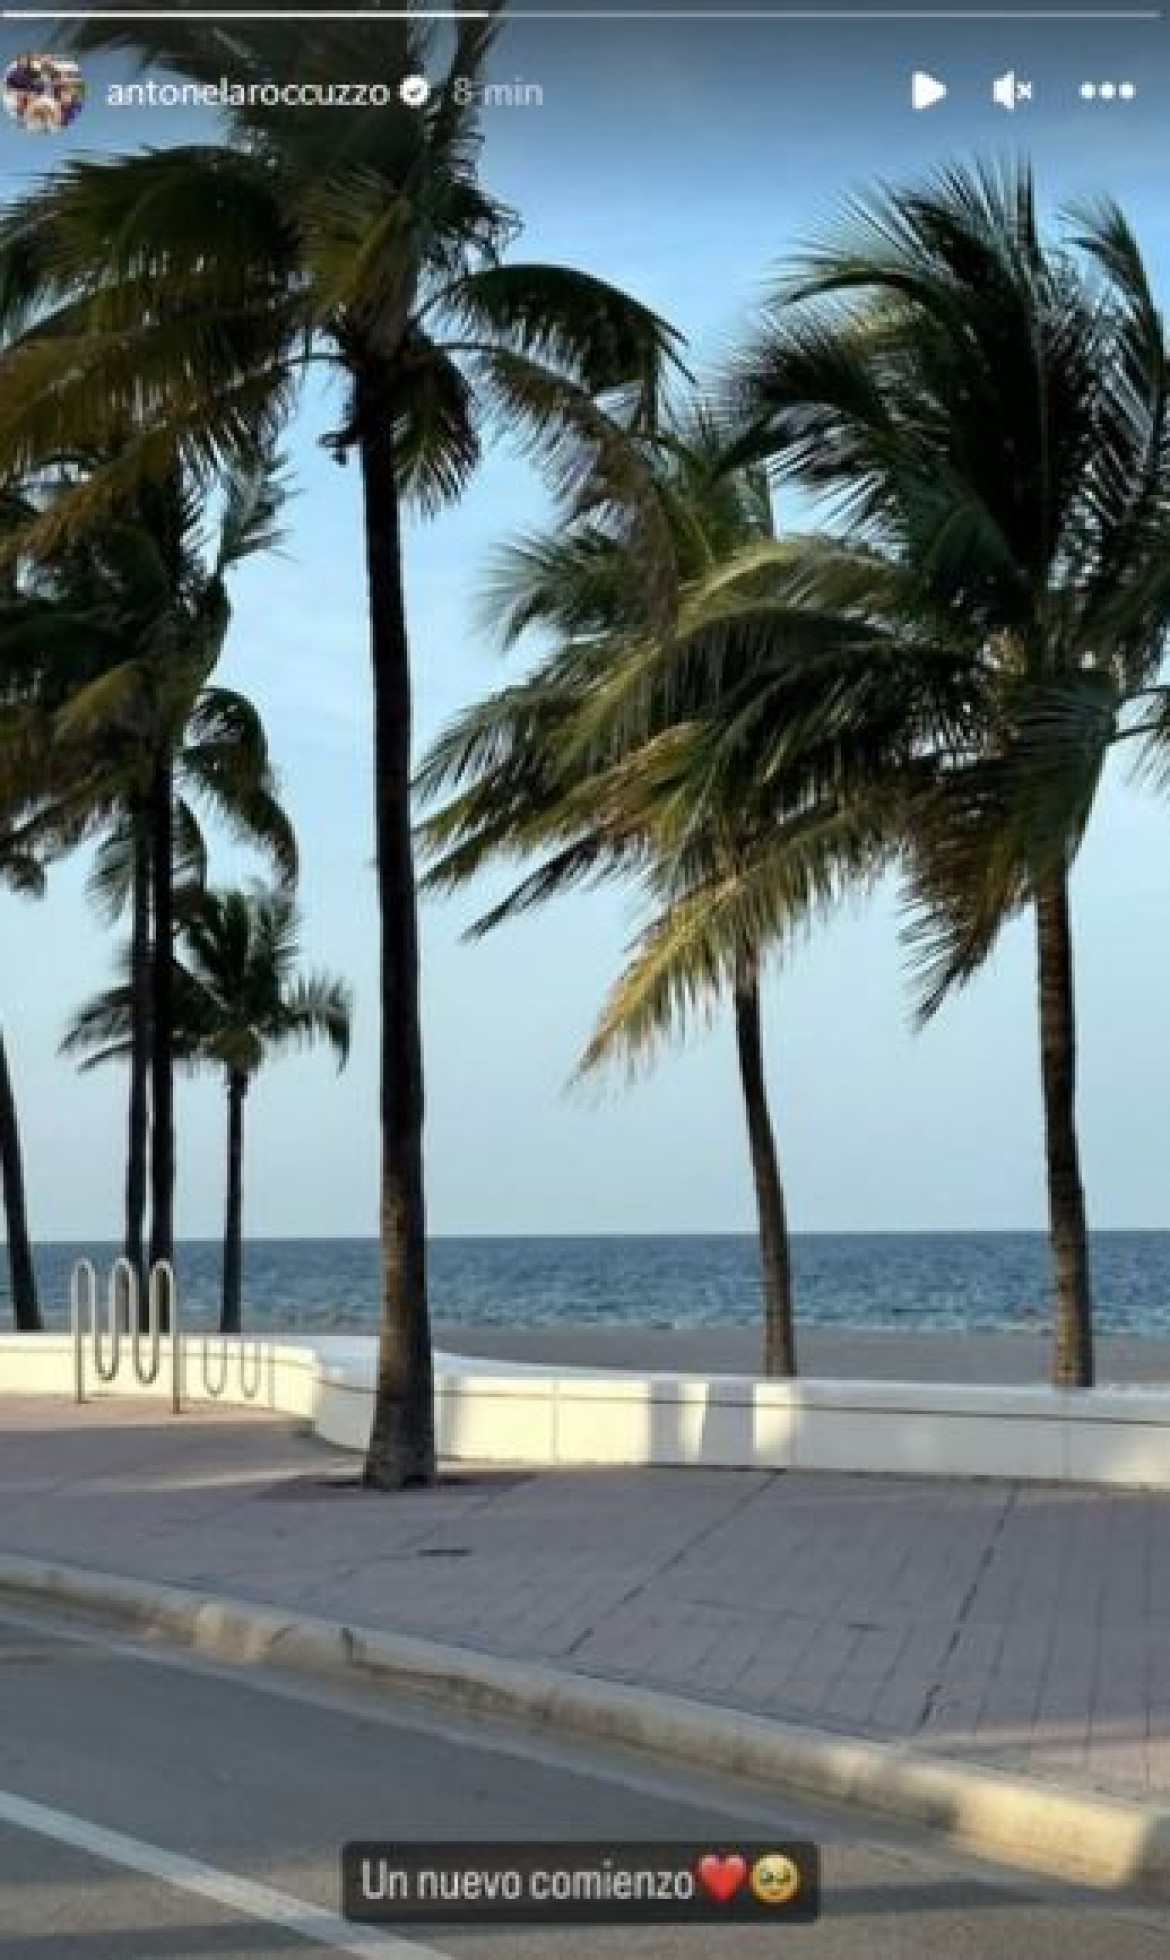 La historia que compartió Antonela Roccuzzo tras su arribo a Miami. Foto: Instagram @antonelaroccuzzo.